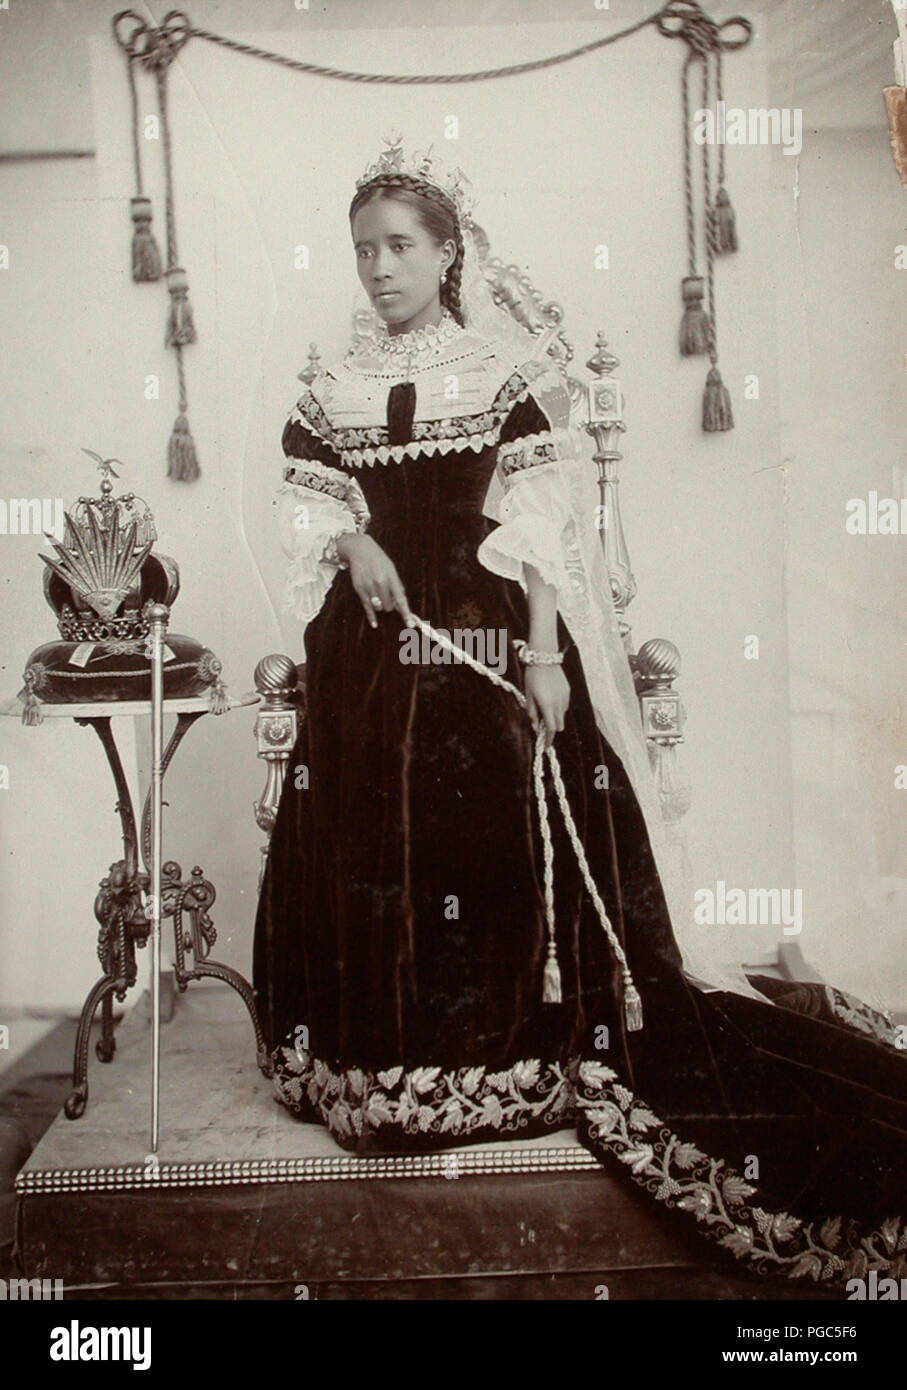 Königin Ranavalona III stand neben einem Thron Tabelle, die ihre Krone auf liegt. Sie trägt einen schönen königlichen Talar, hat einige Stickerei auf. Ihr Haar ist geflochten. Ca. 1890 Stockfoto